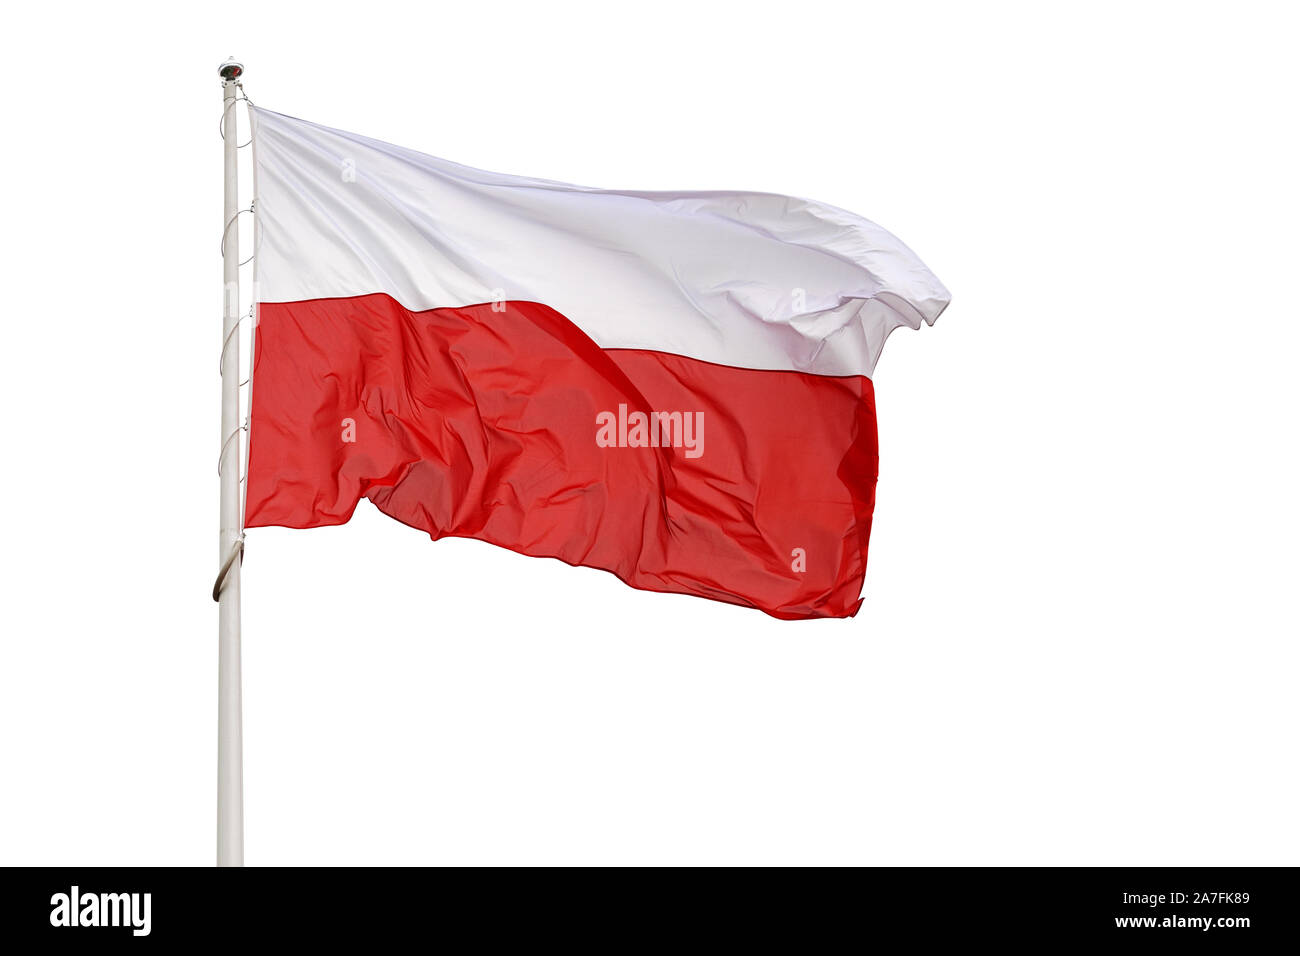 Brandissant le drapeau national de la Pologne sur un fond blanc Banque D'Images